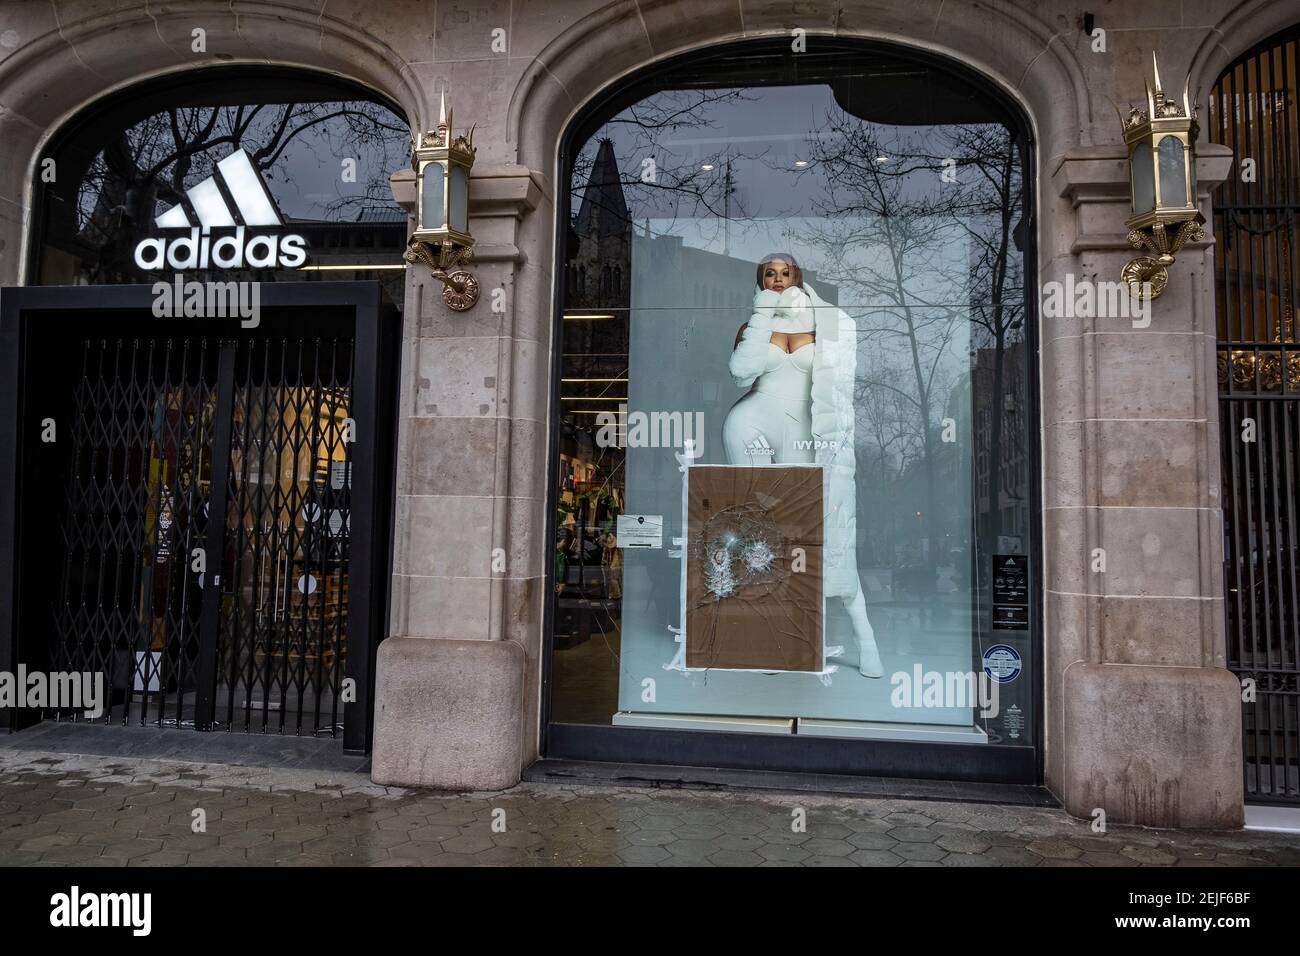 Adidas store Banque de photographies et d'images à haute résolution - Page  5 - Alamy